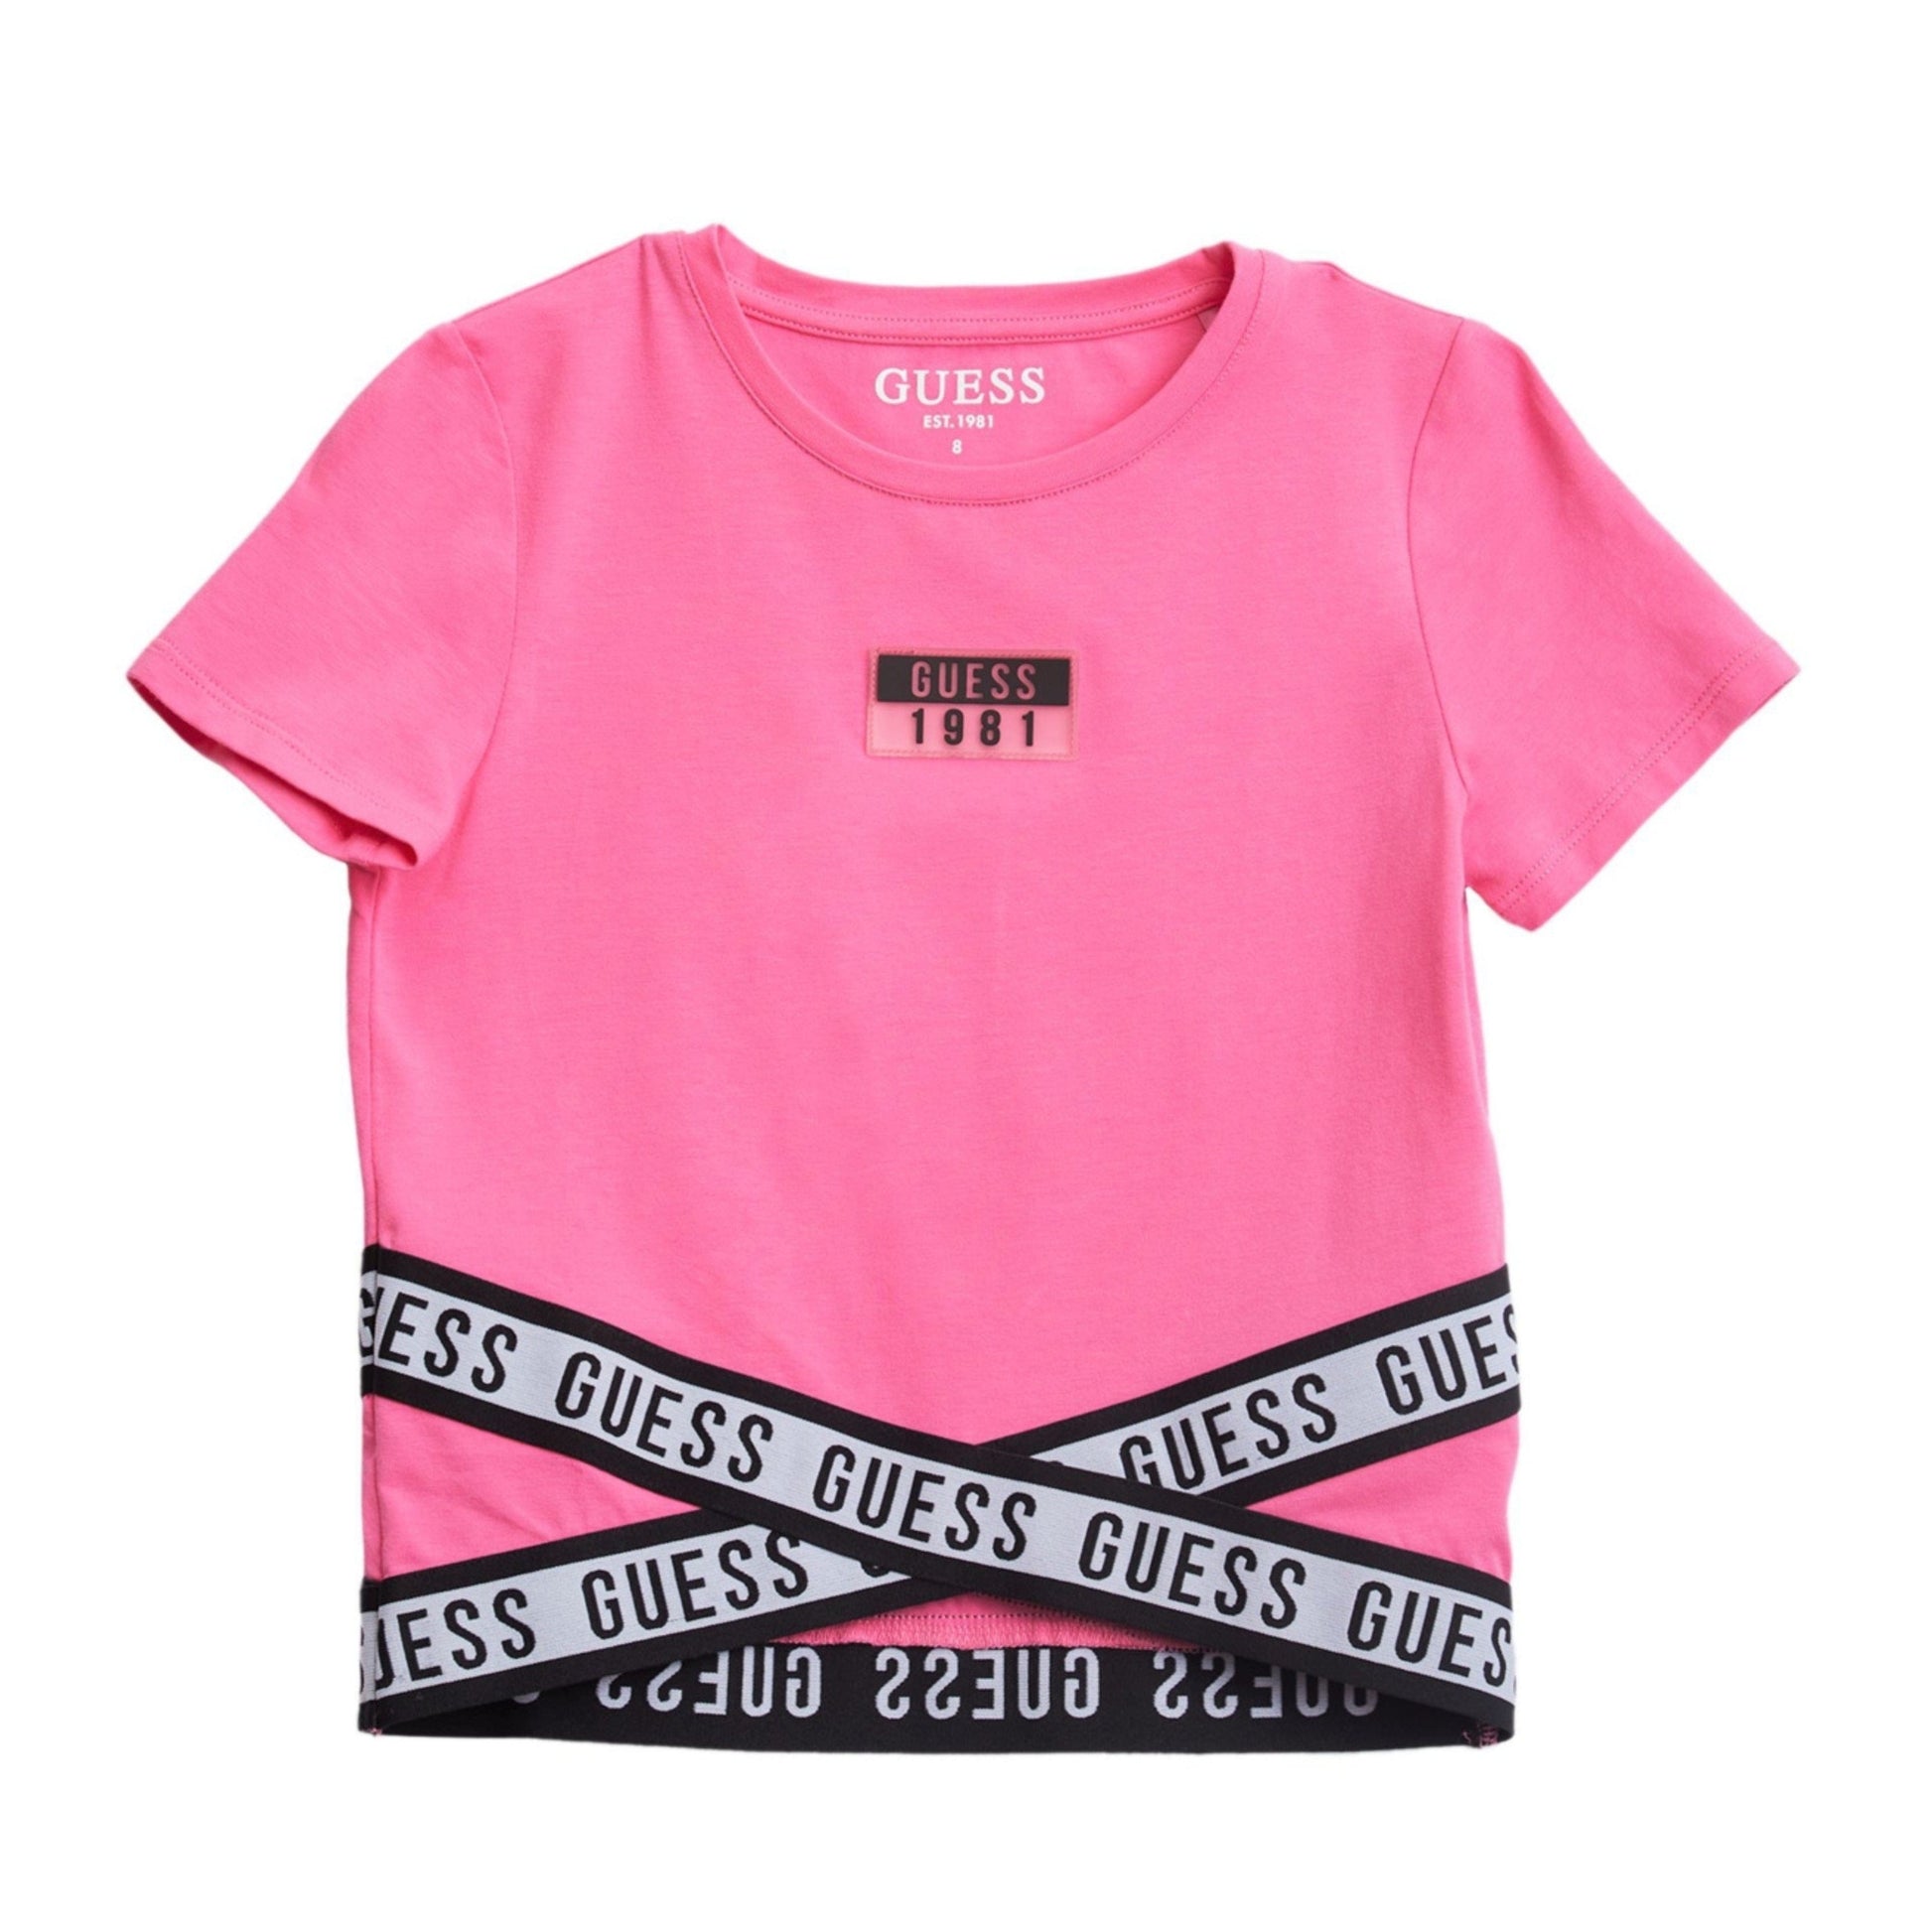 GUESS Girls Tops XS / Pink GUESS - Kids -  Criss Cross Jersey T-shirt